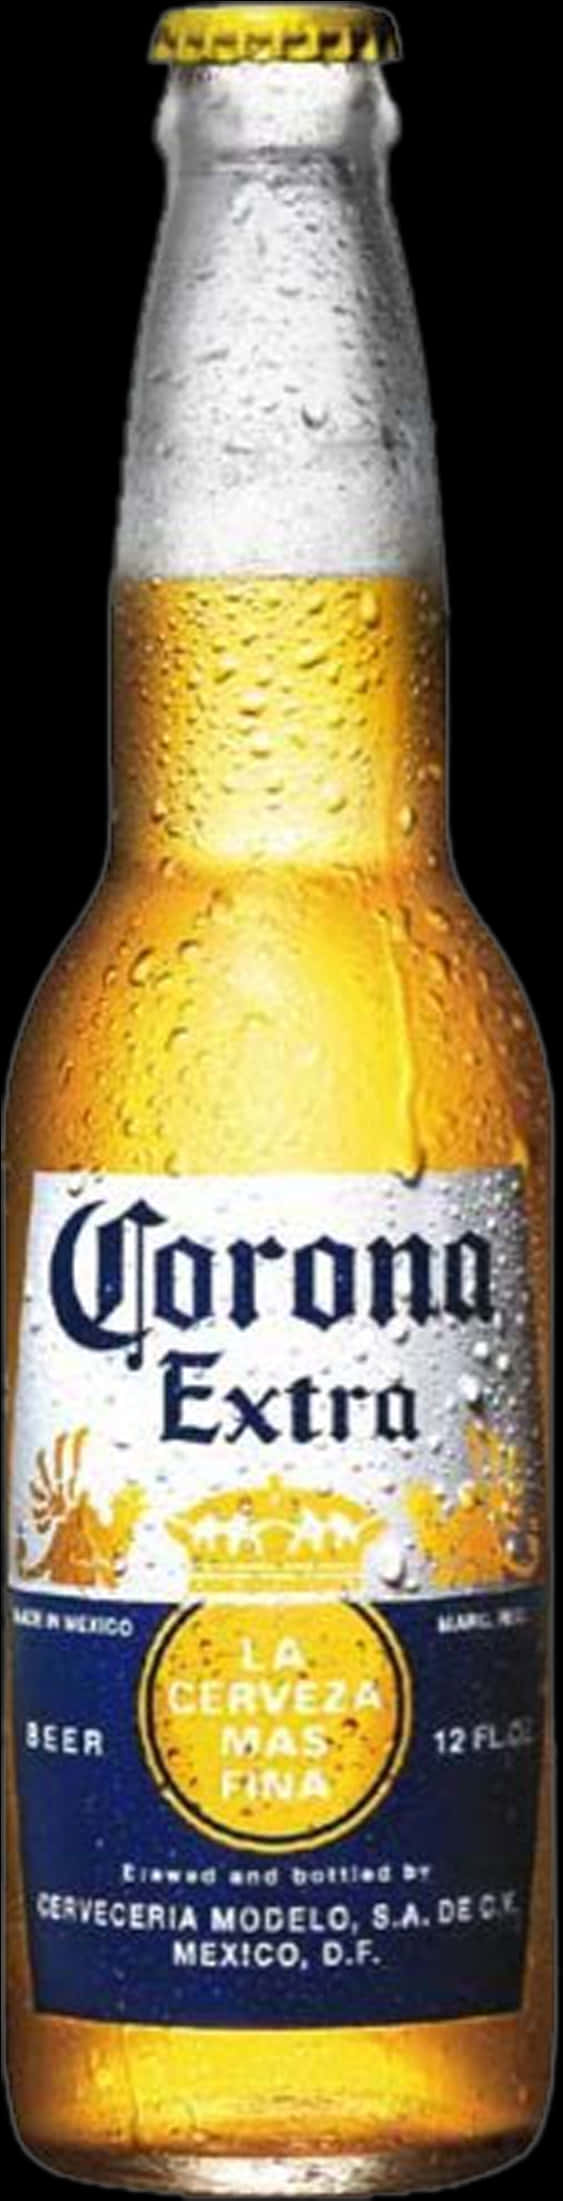 Corona Extra Beer Bottle